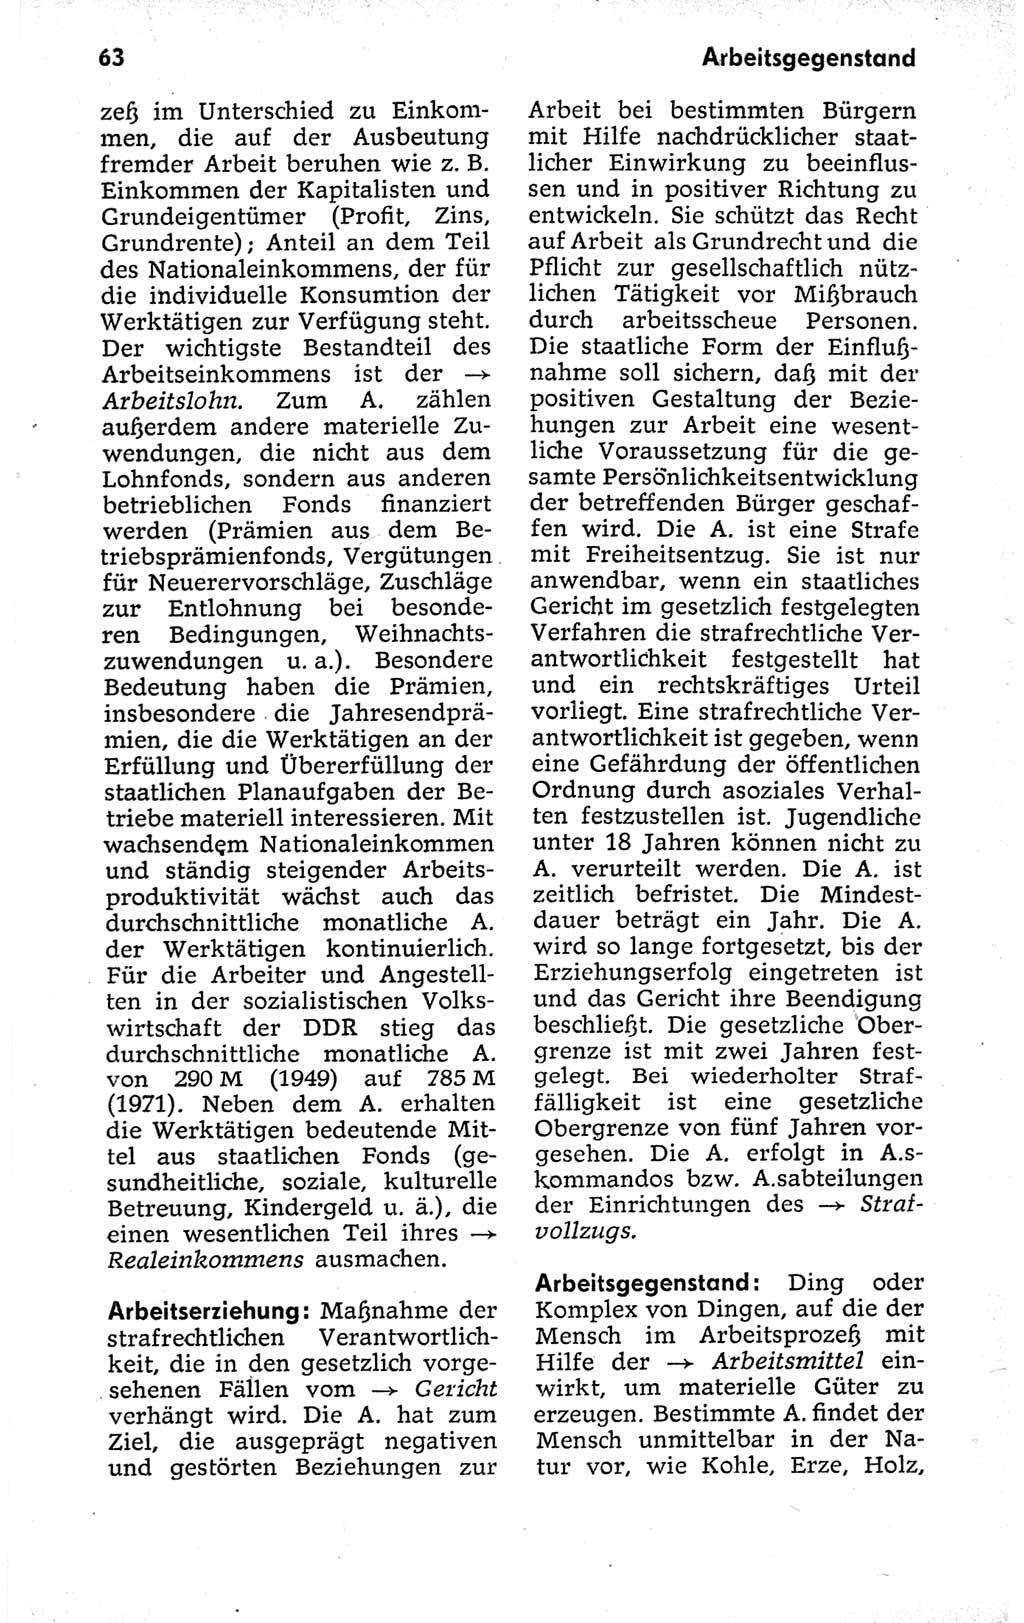 Kleines politisches Wörterbuch [Deutsche Demokratische Republik (DDR)] 1973, Seite 63 (Kl. pol. Wb. DDR 1973, S. 63)